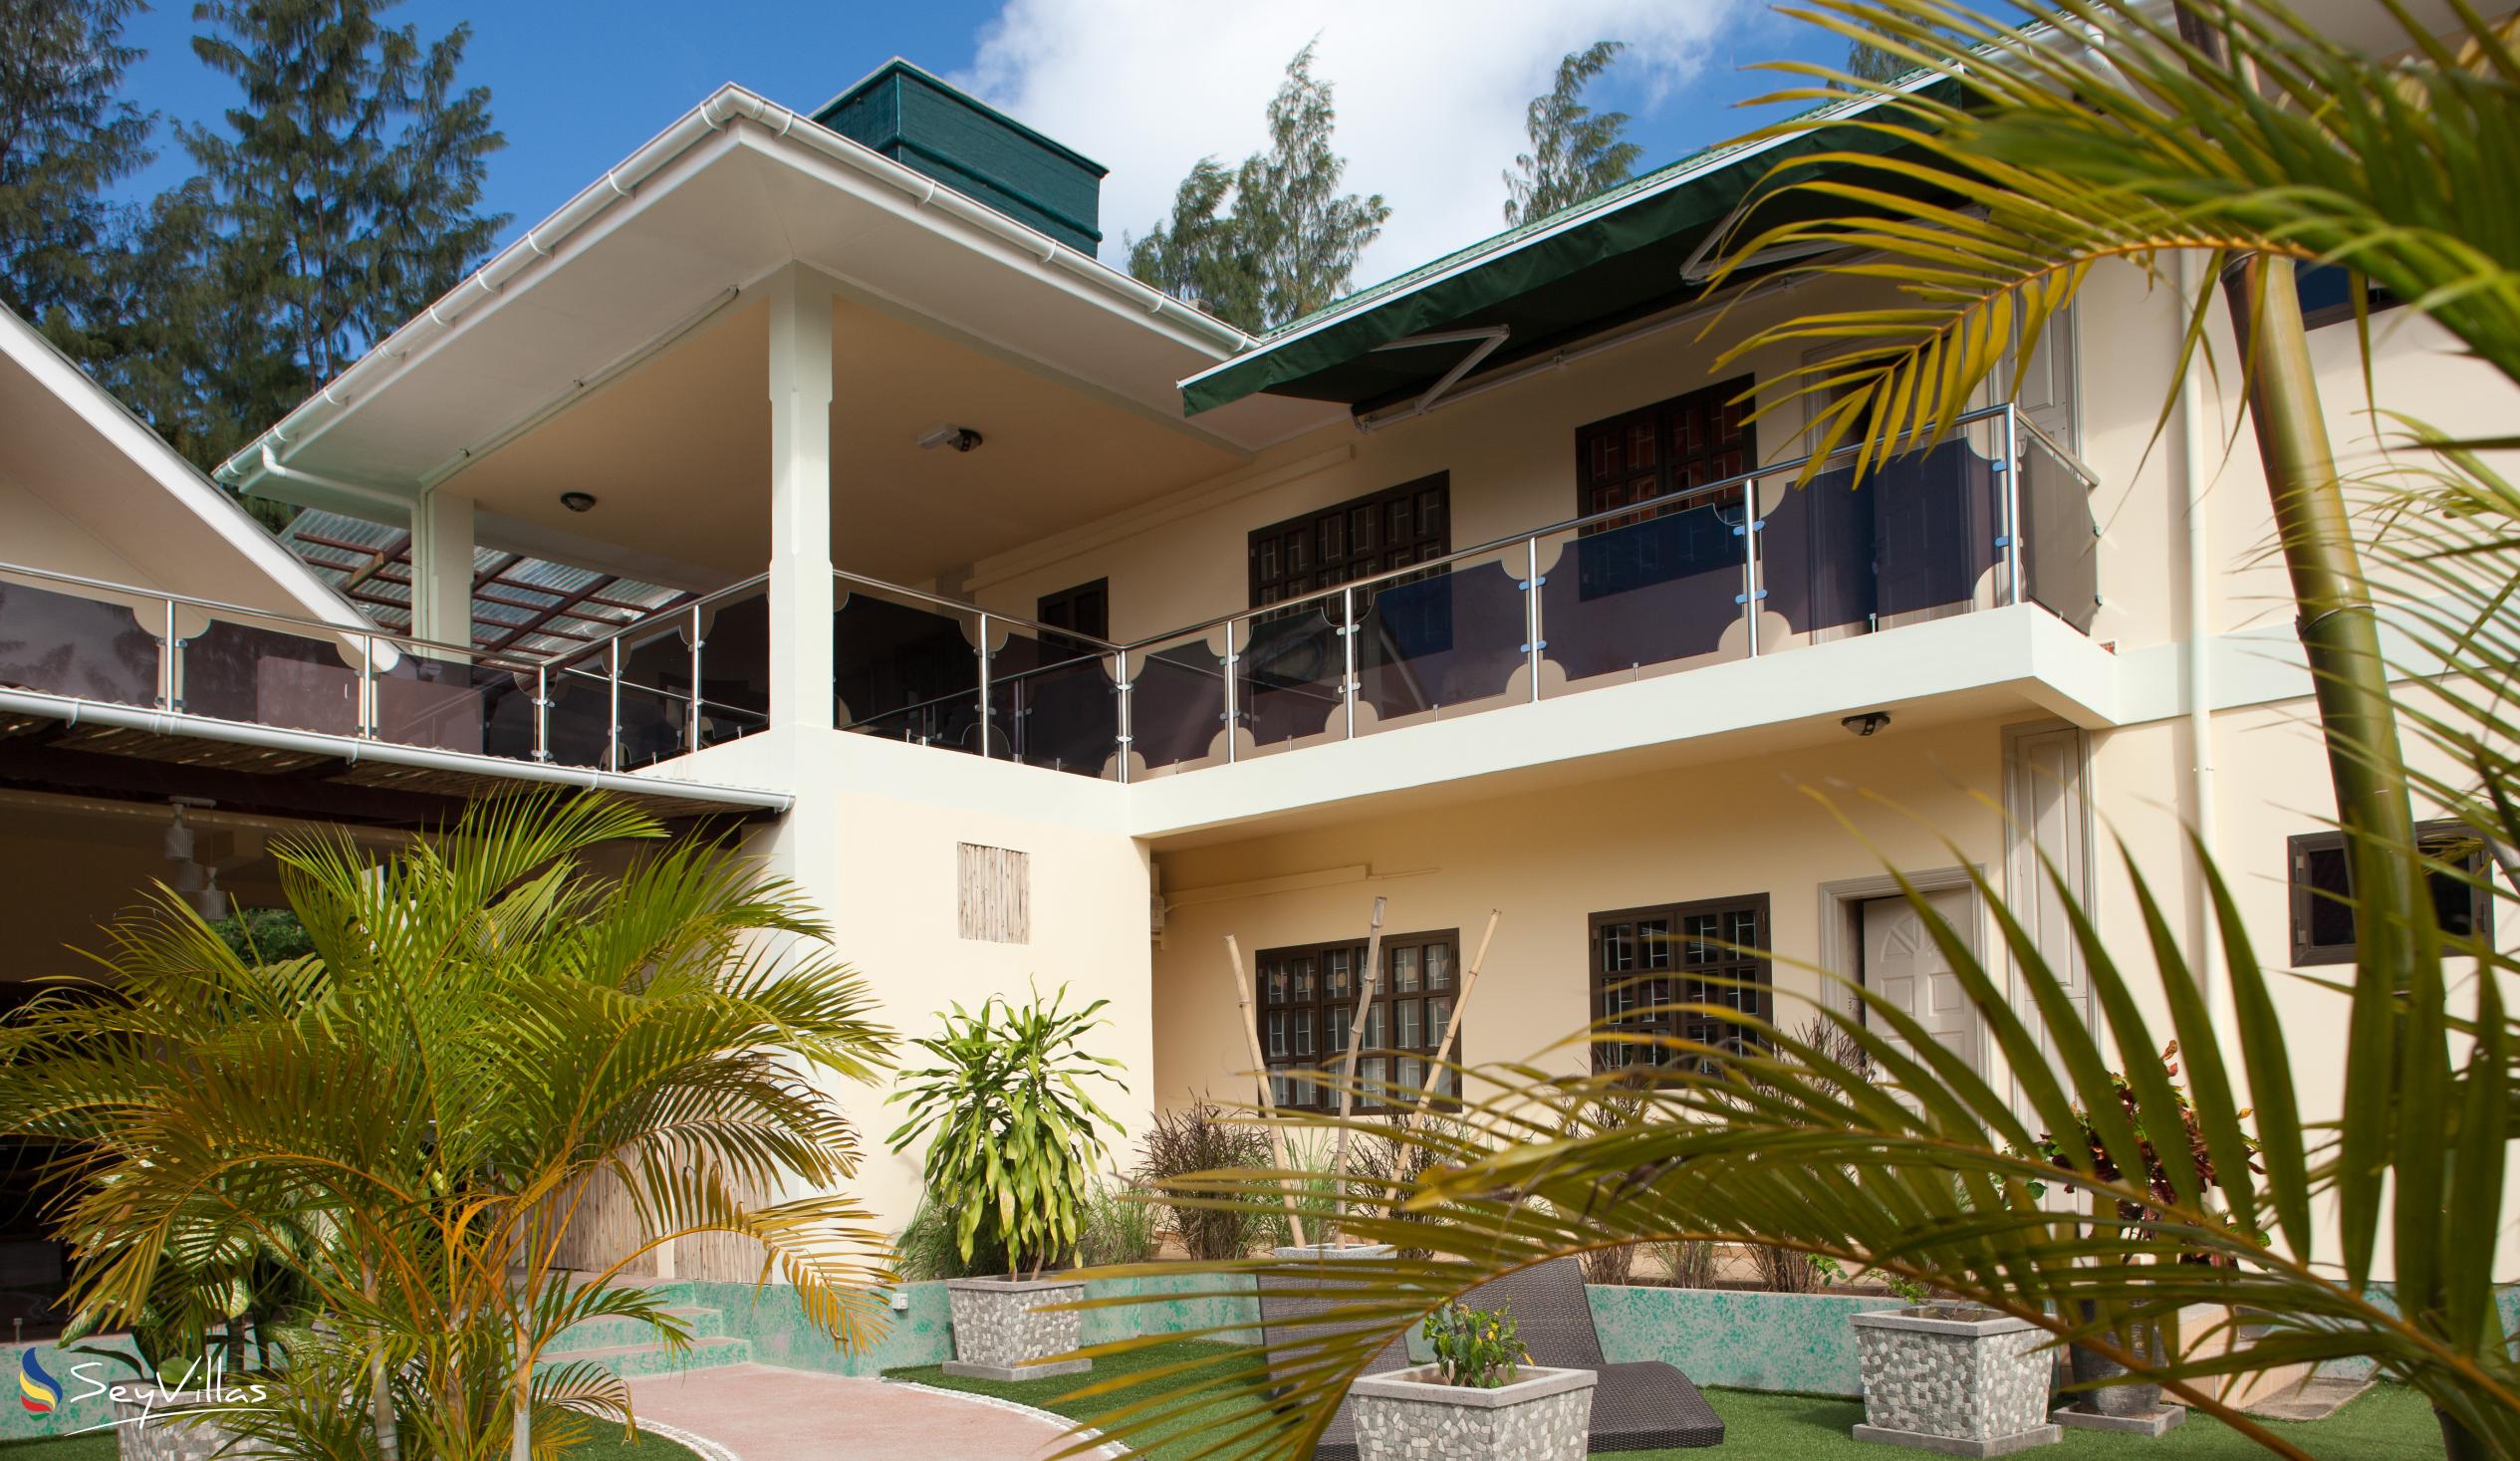 Foto 12: Chez Bea Villa - Aussenbereich - Praslin (Seychellen)